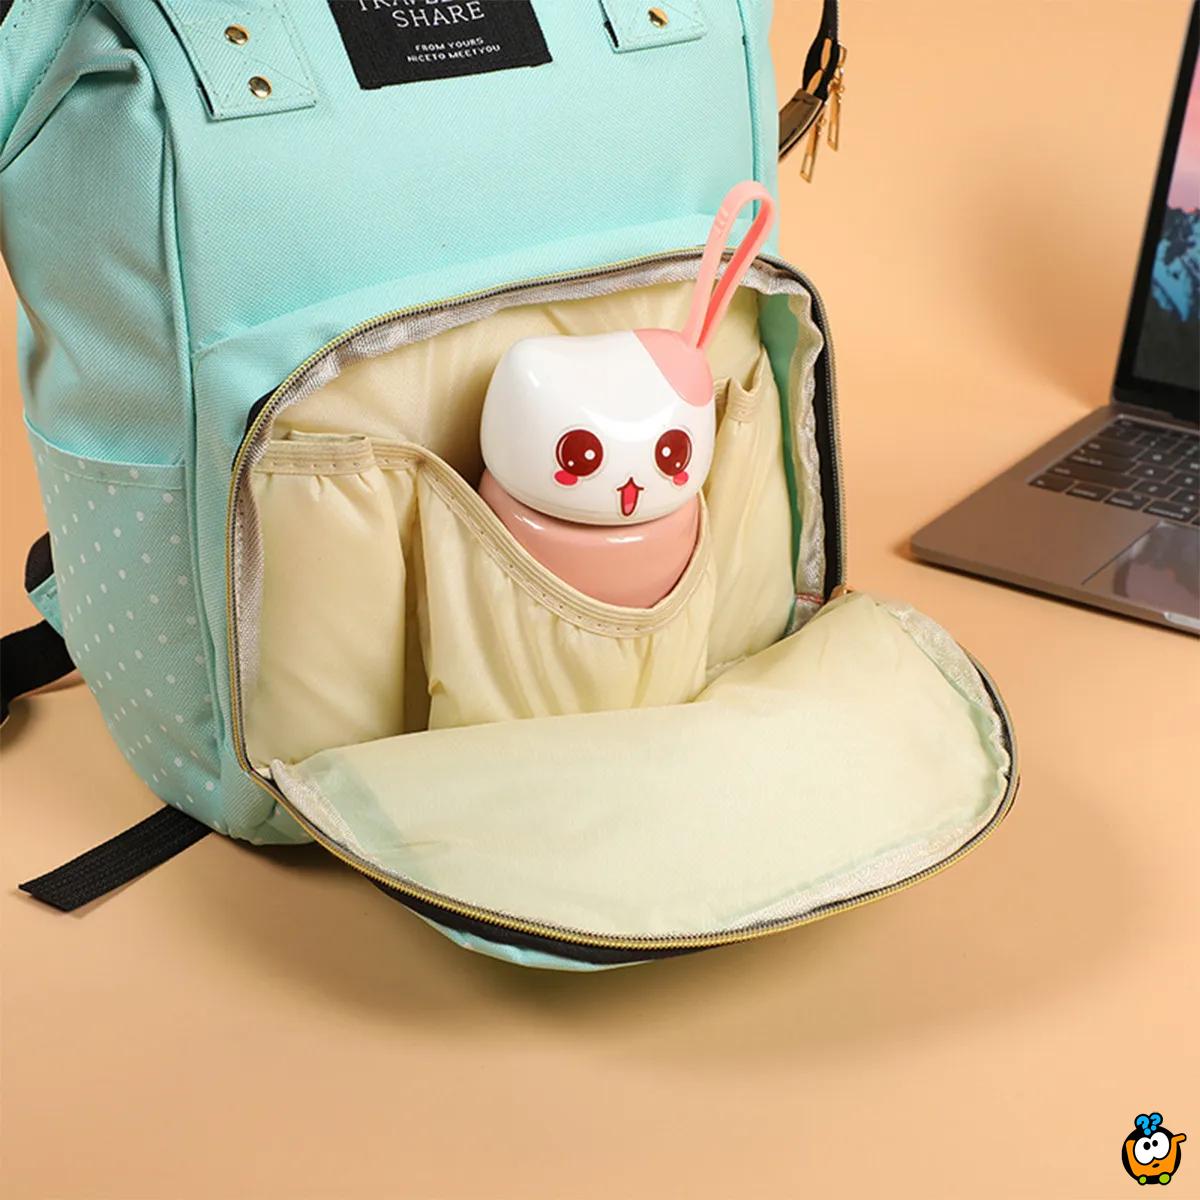 Mommy Travel Backpack – Višenamesnki ranac za bebine stvarčice